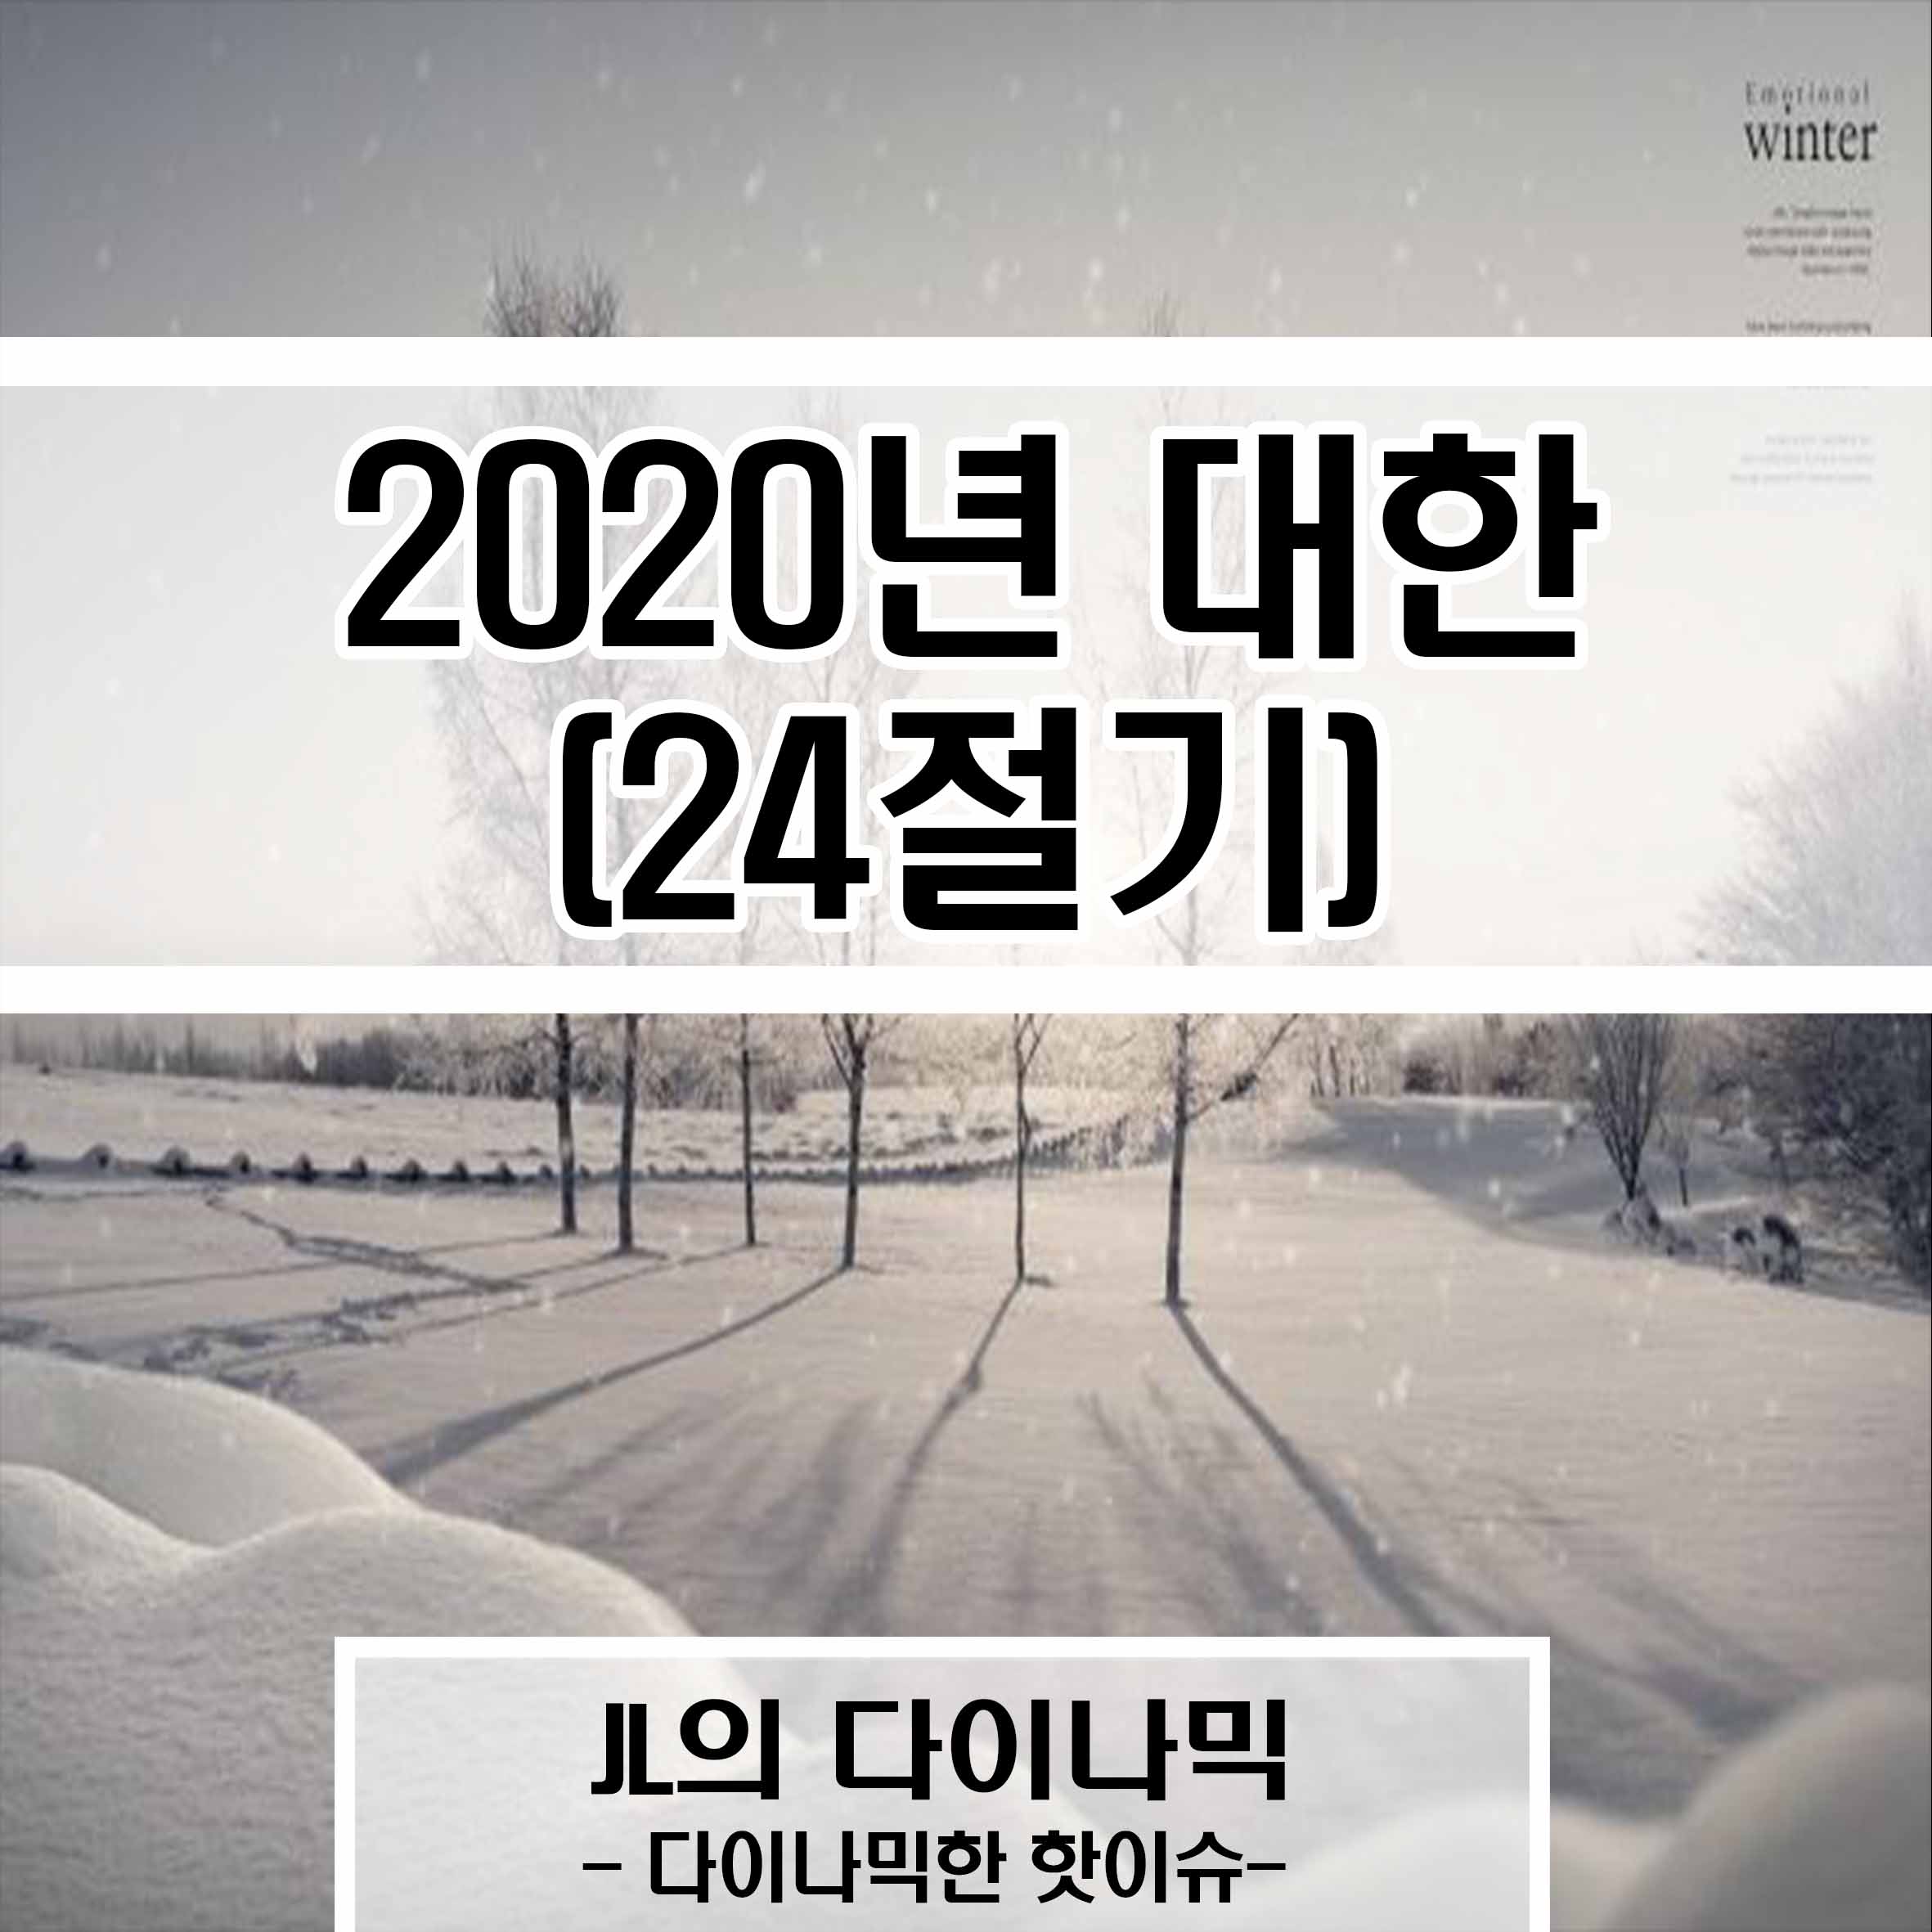 2020년 대한 (24절기), JL의 다이나믹, 다이나믹한 핫이슈